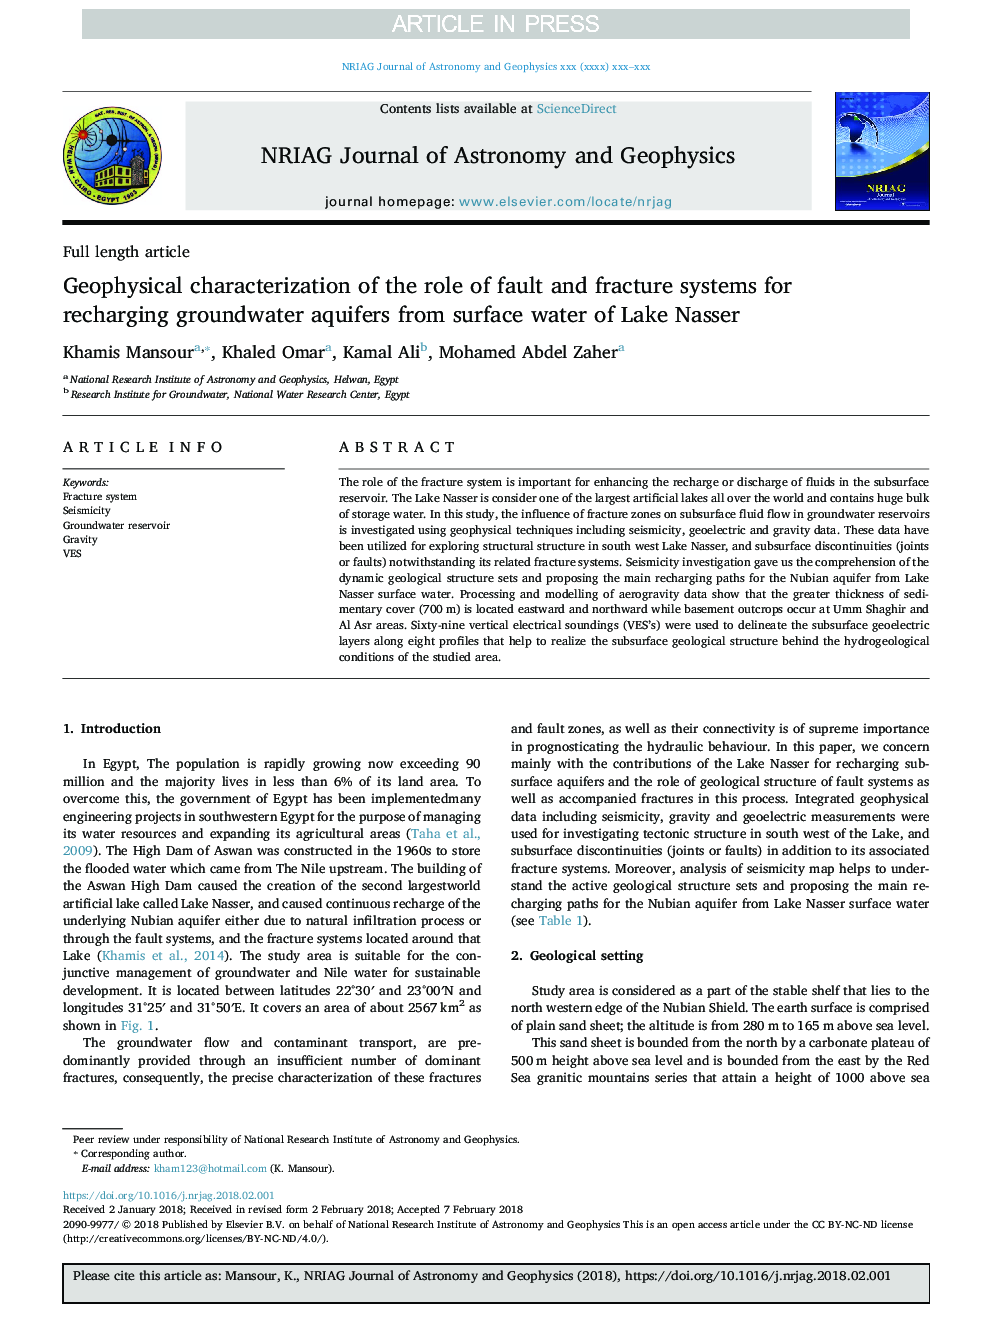 مشخصات ژئوفیزیکی نقش سیستم های گسل و شکستگی برای شارژ آبخوان های زیرزمینی از آب های سطحی دریاچه ناصر 